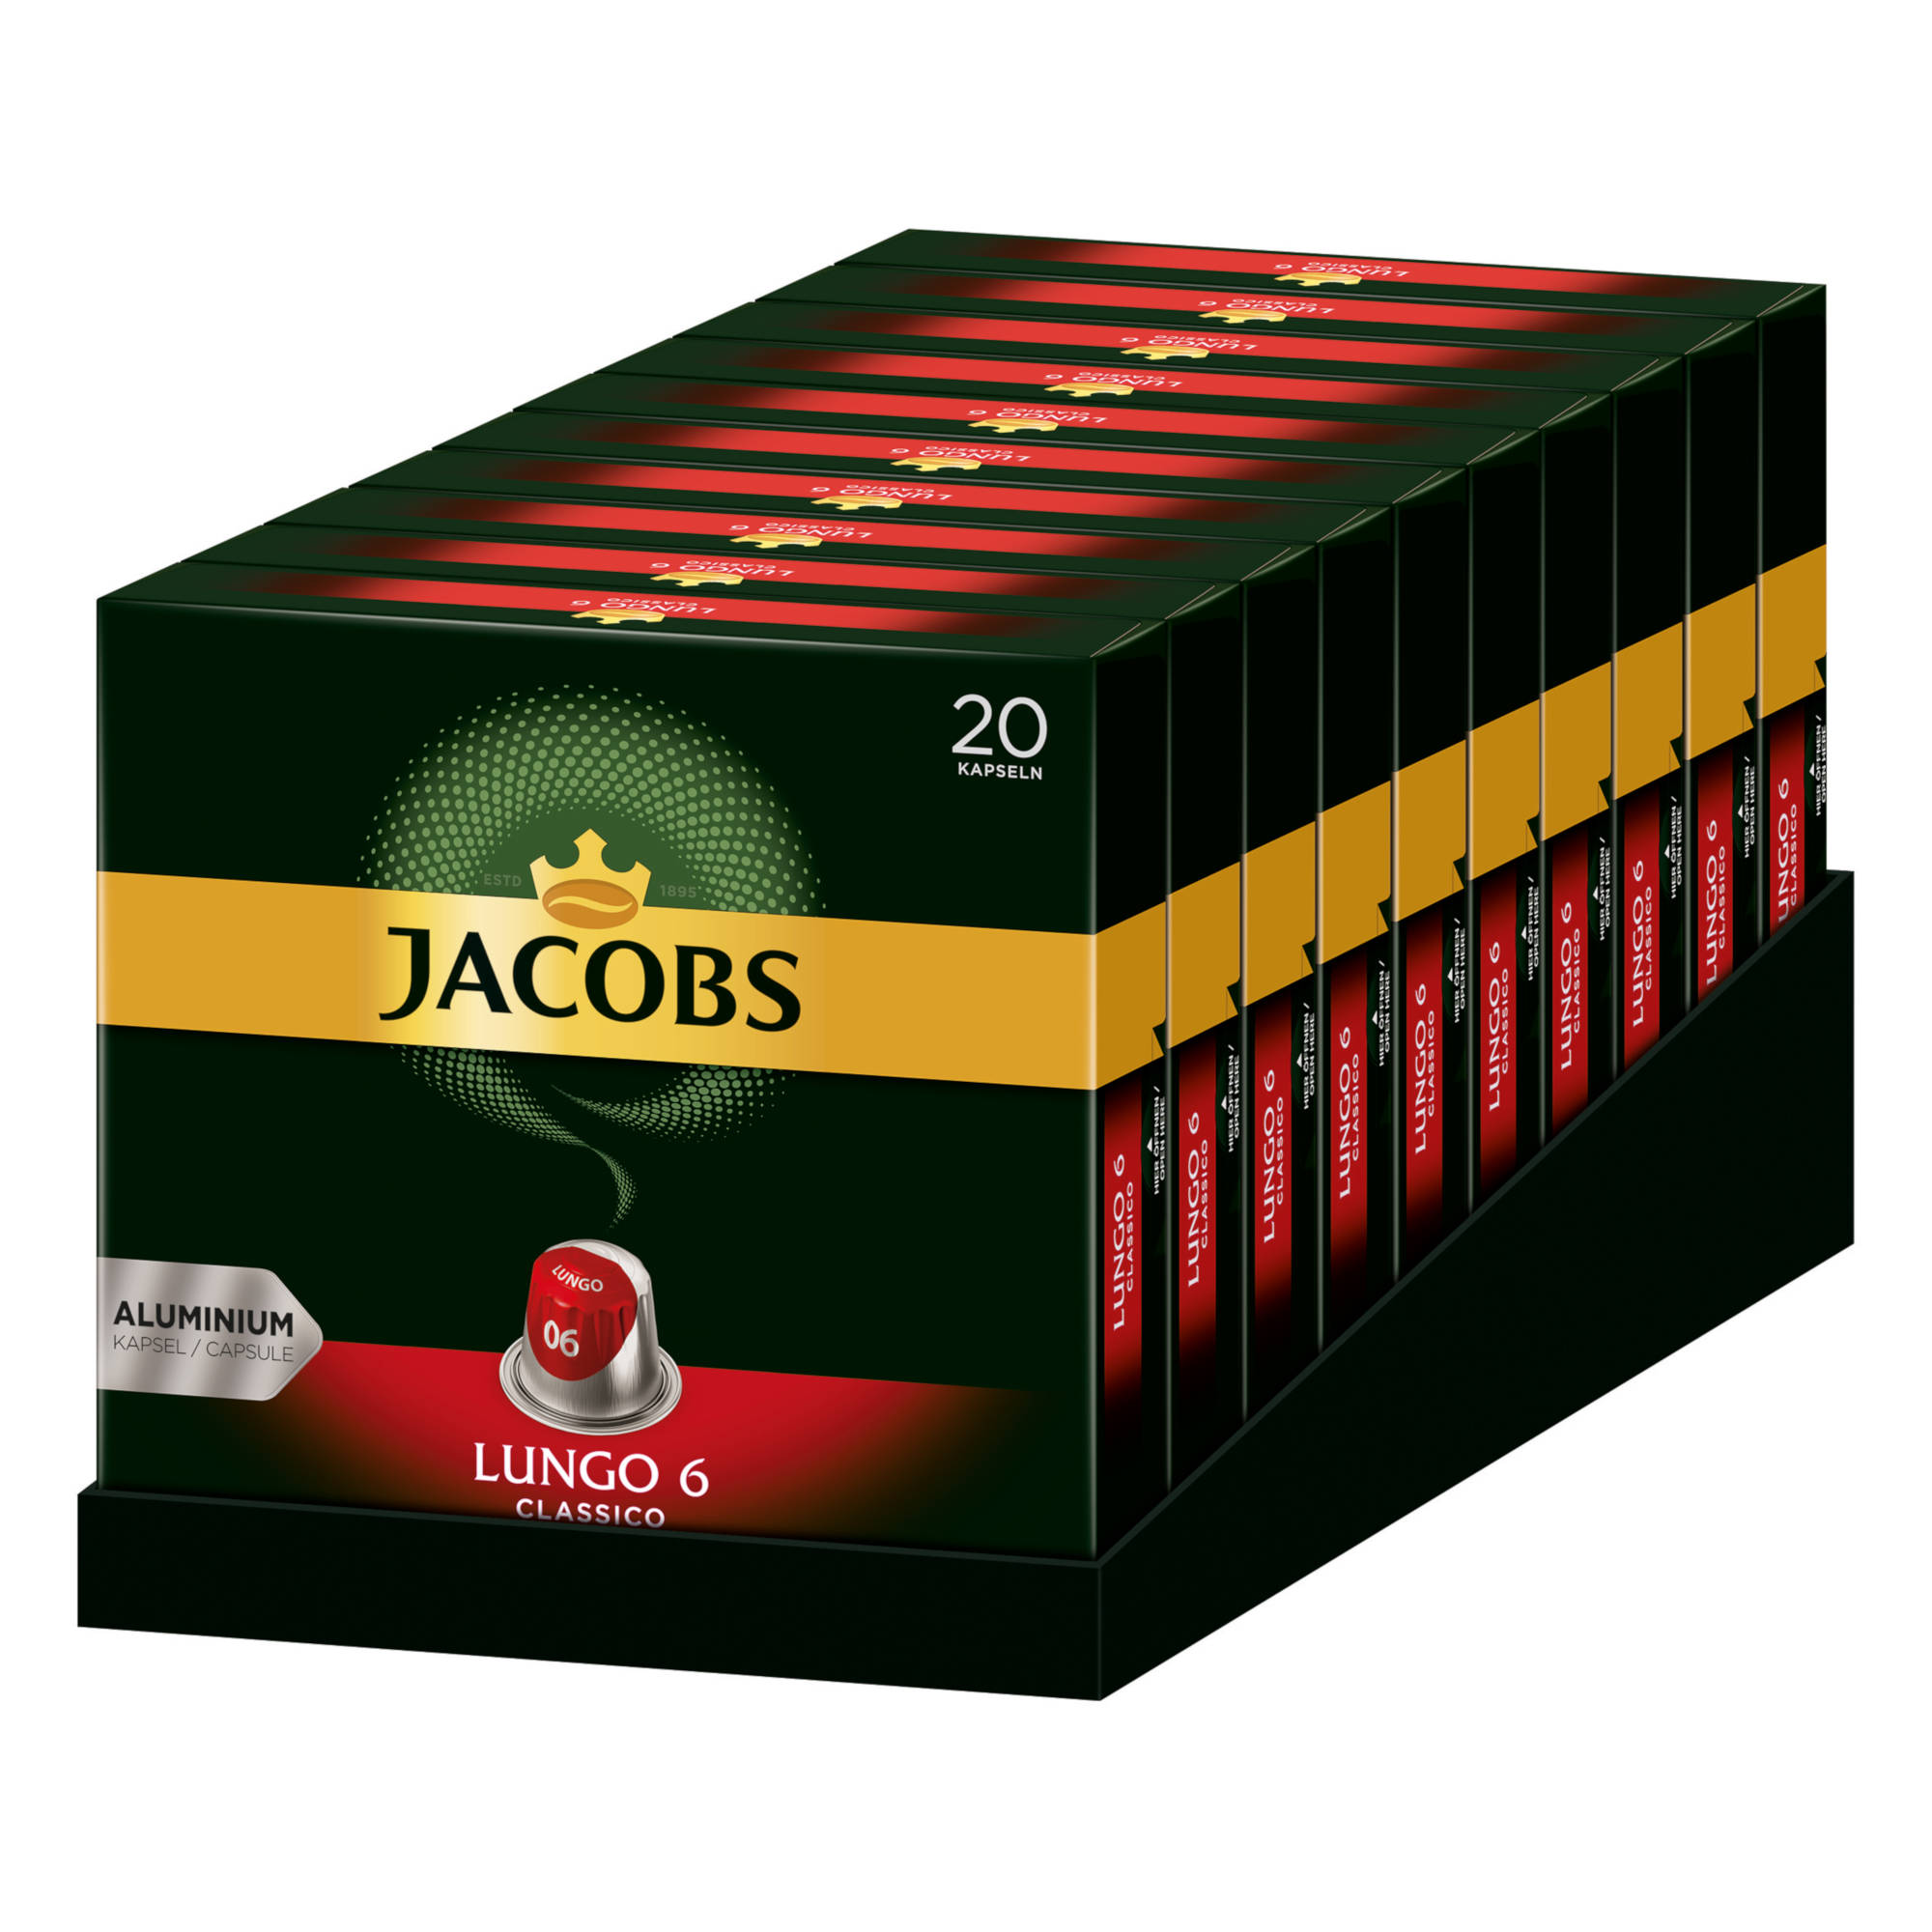 Lungo 10 20 6 System) Nespresso®* JACOBS kompatible Kaffeekapseln (Nespresso x Classico